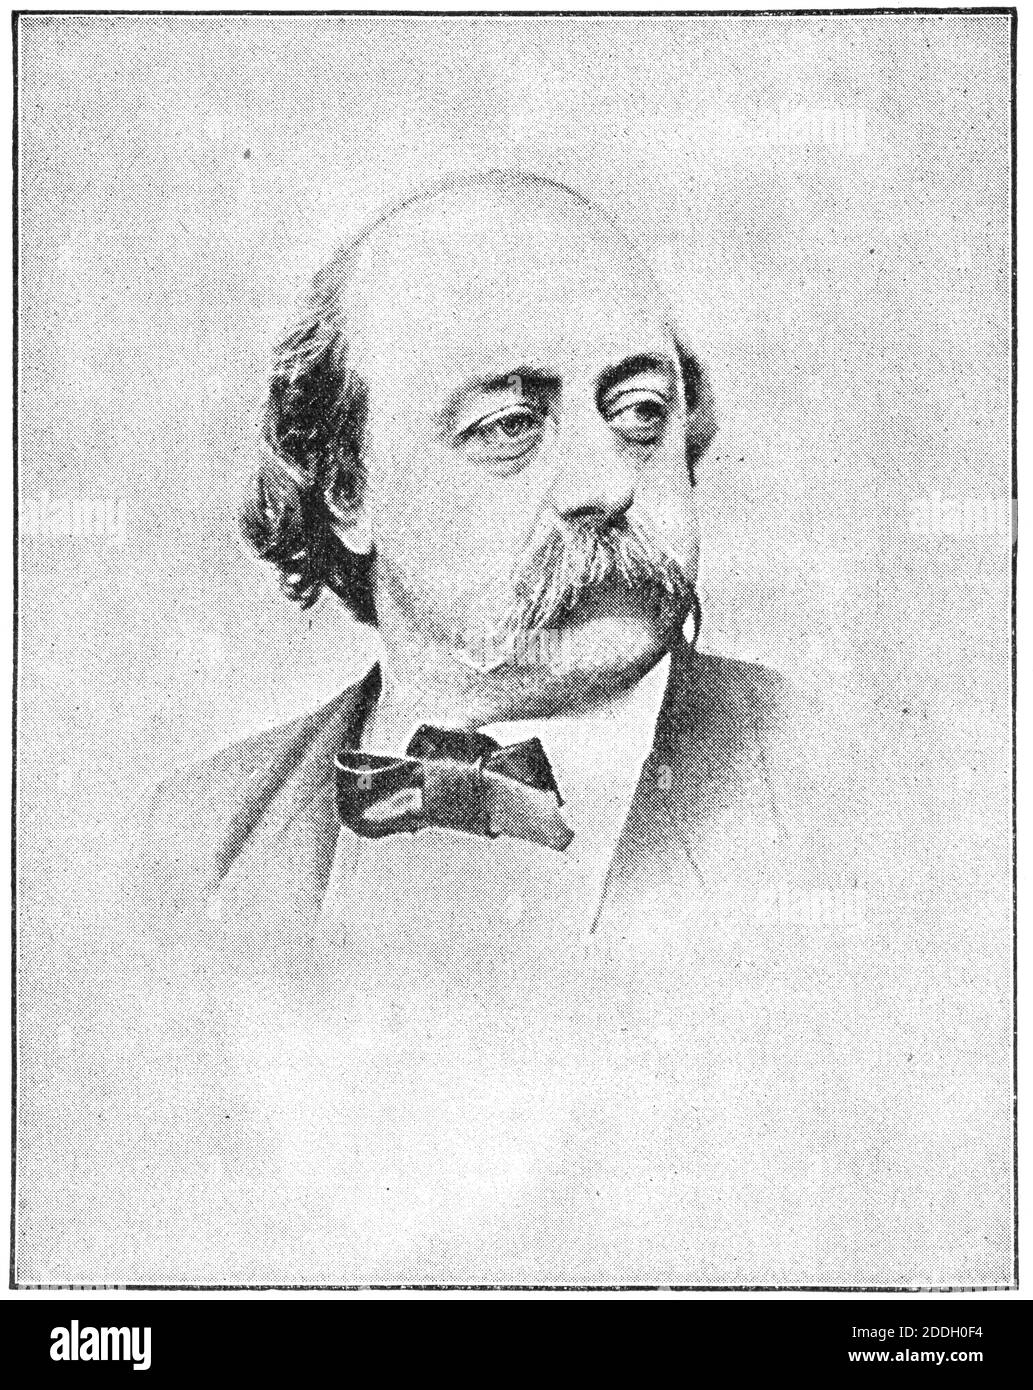 Portrait von Gustave Flaubert - ein französischer Schriftsteller. Illustration des 19. Jahrhunderts. Weißer Hintergrund. Stockfoto